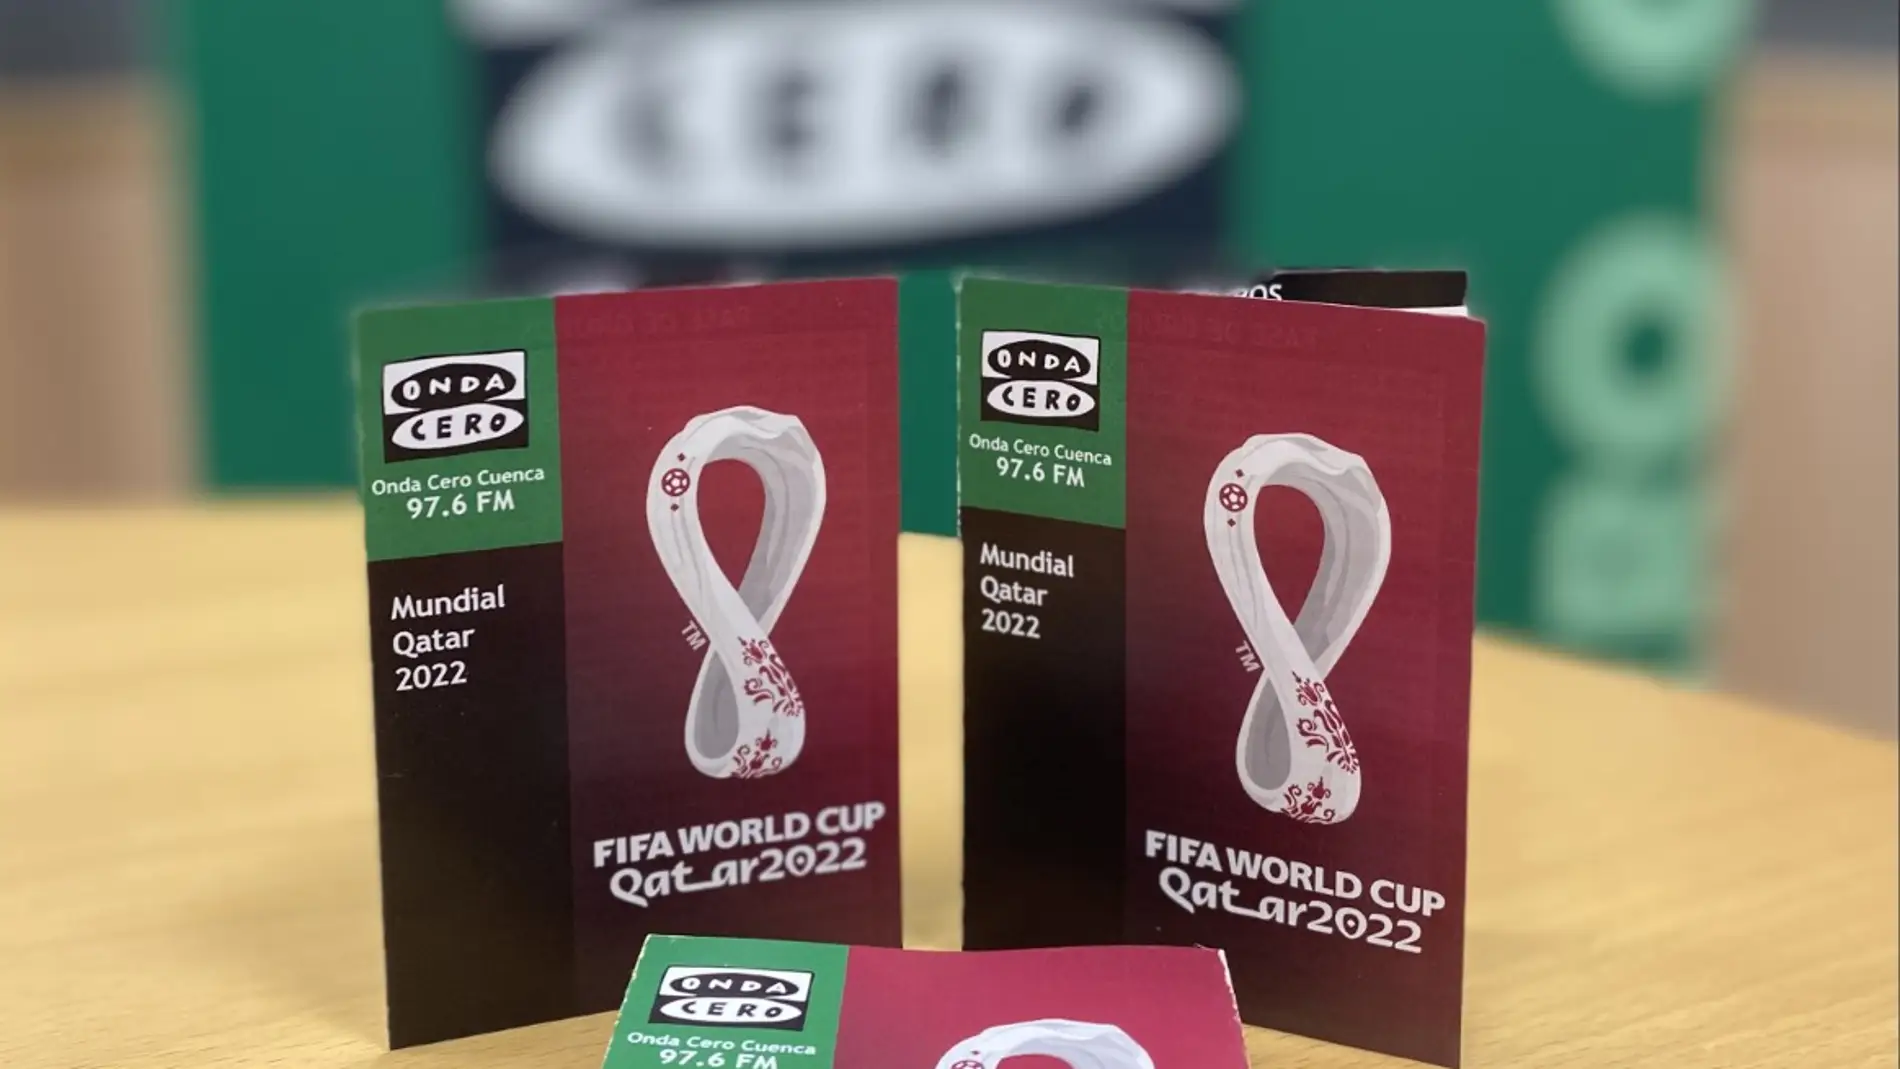 La guía para la Copa del Mundo Qatar 2022